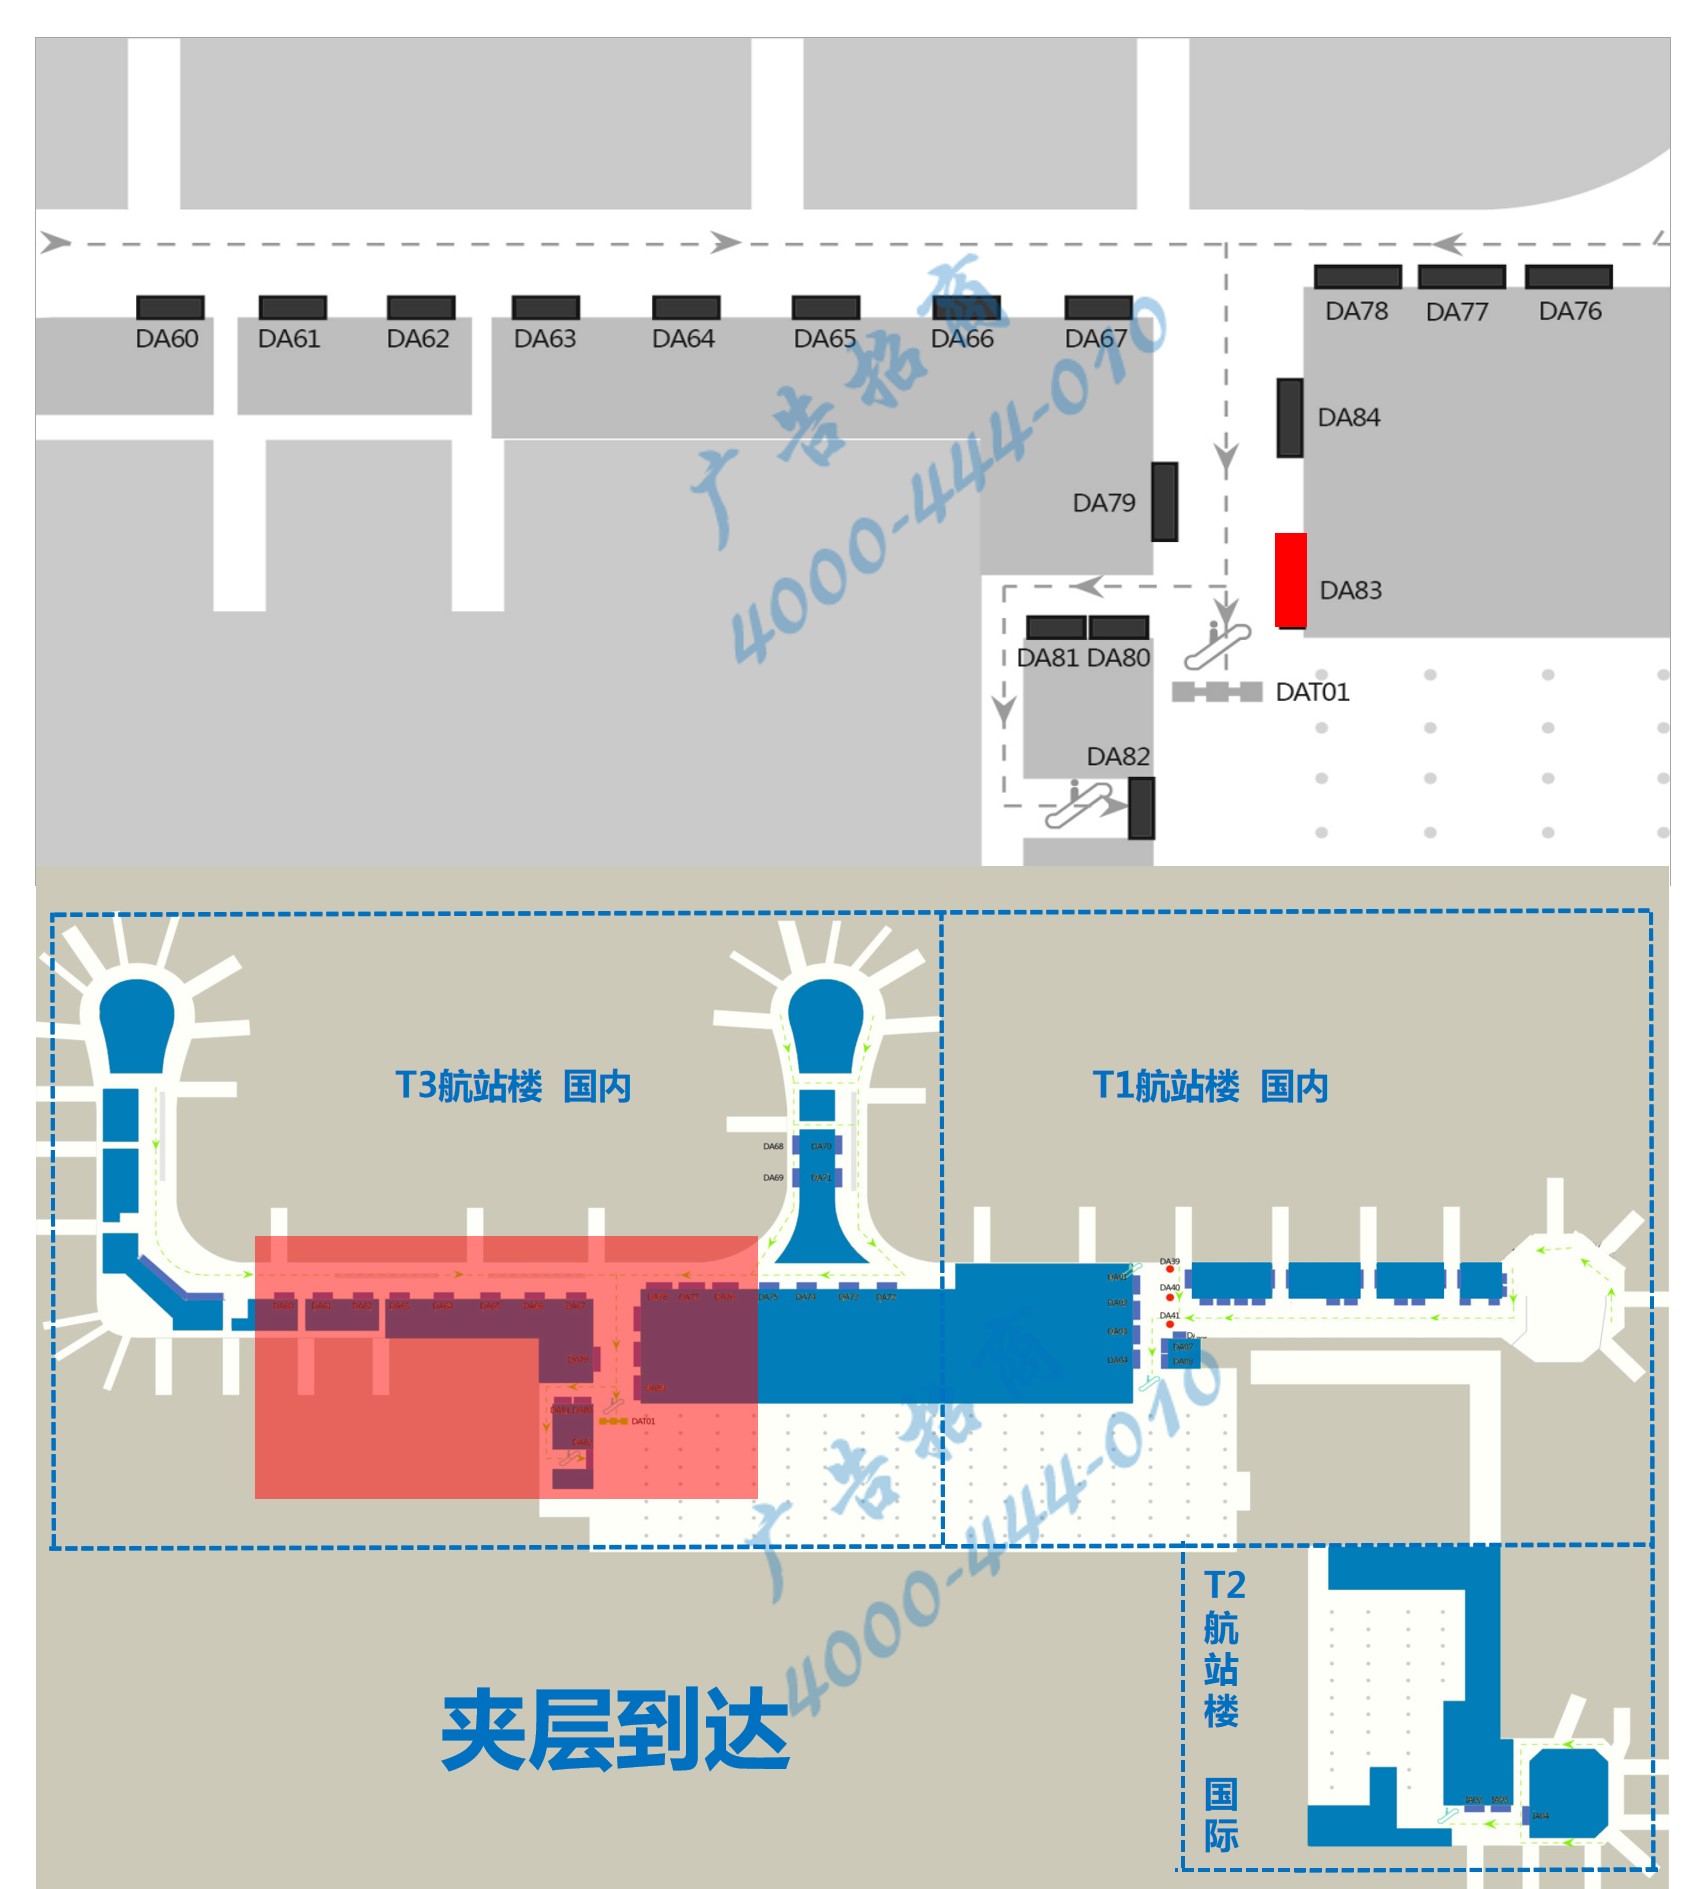 杭州萧山机场广告-T3国内到达夹层汇集口墙体灯箱DA83位置图